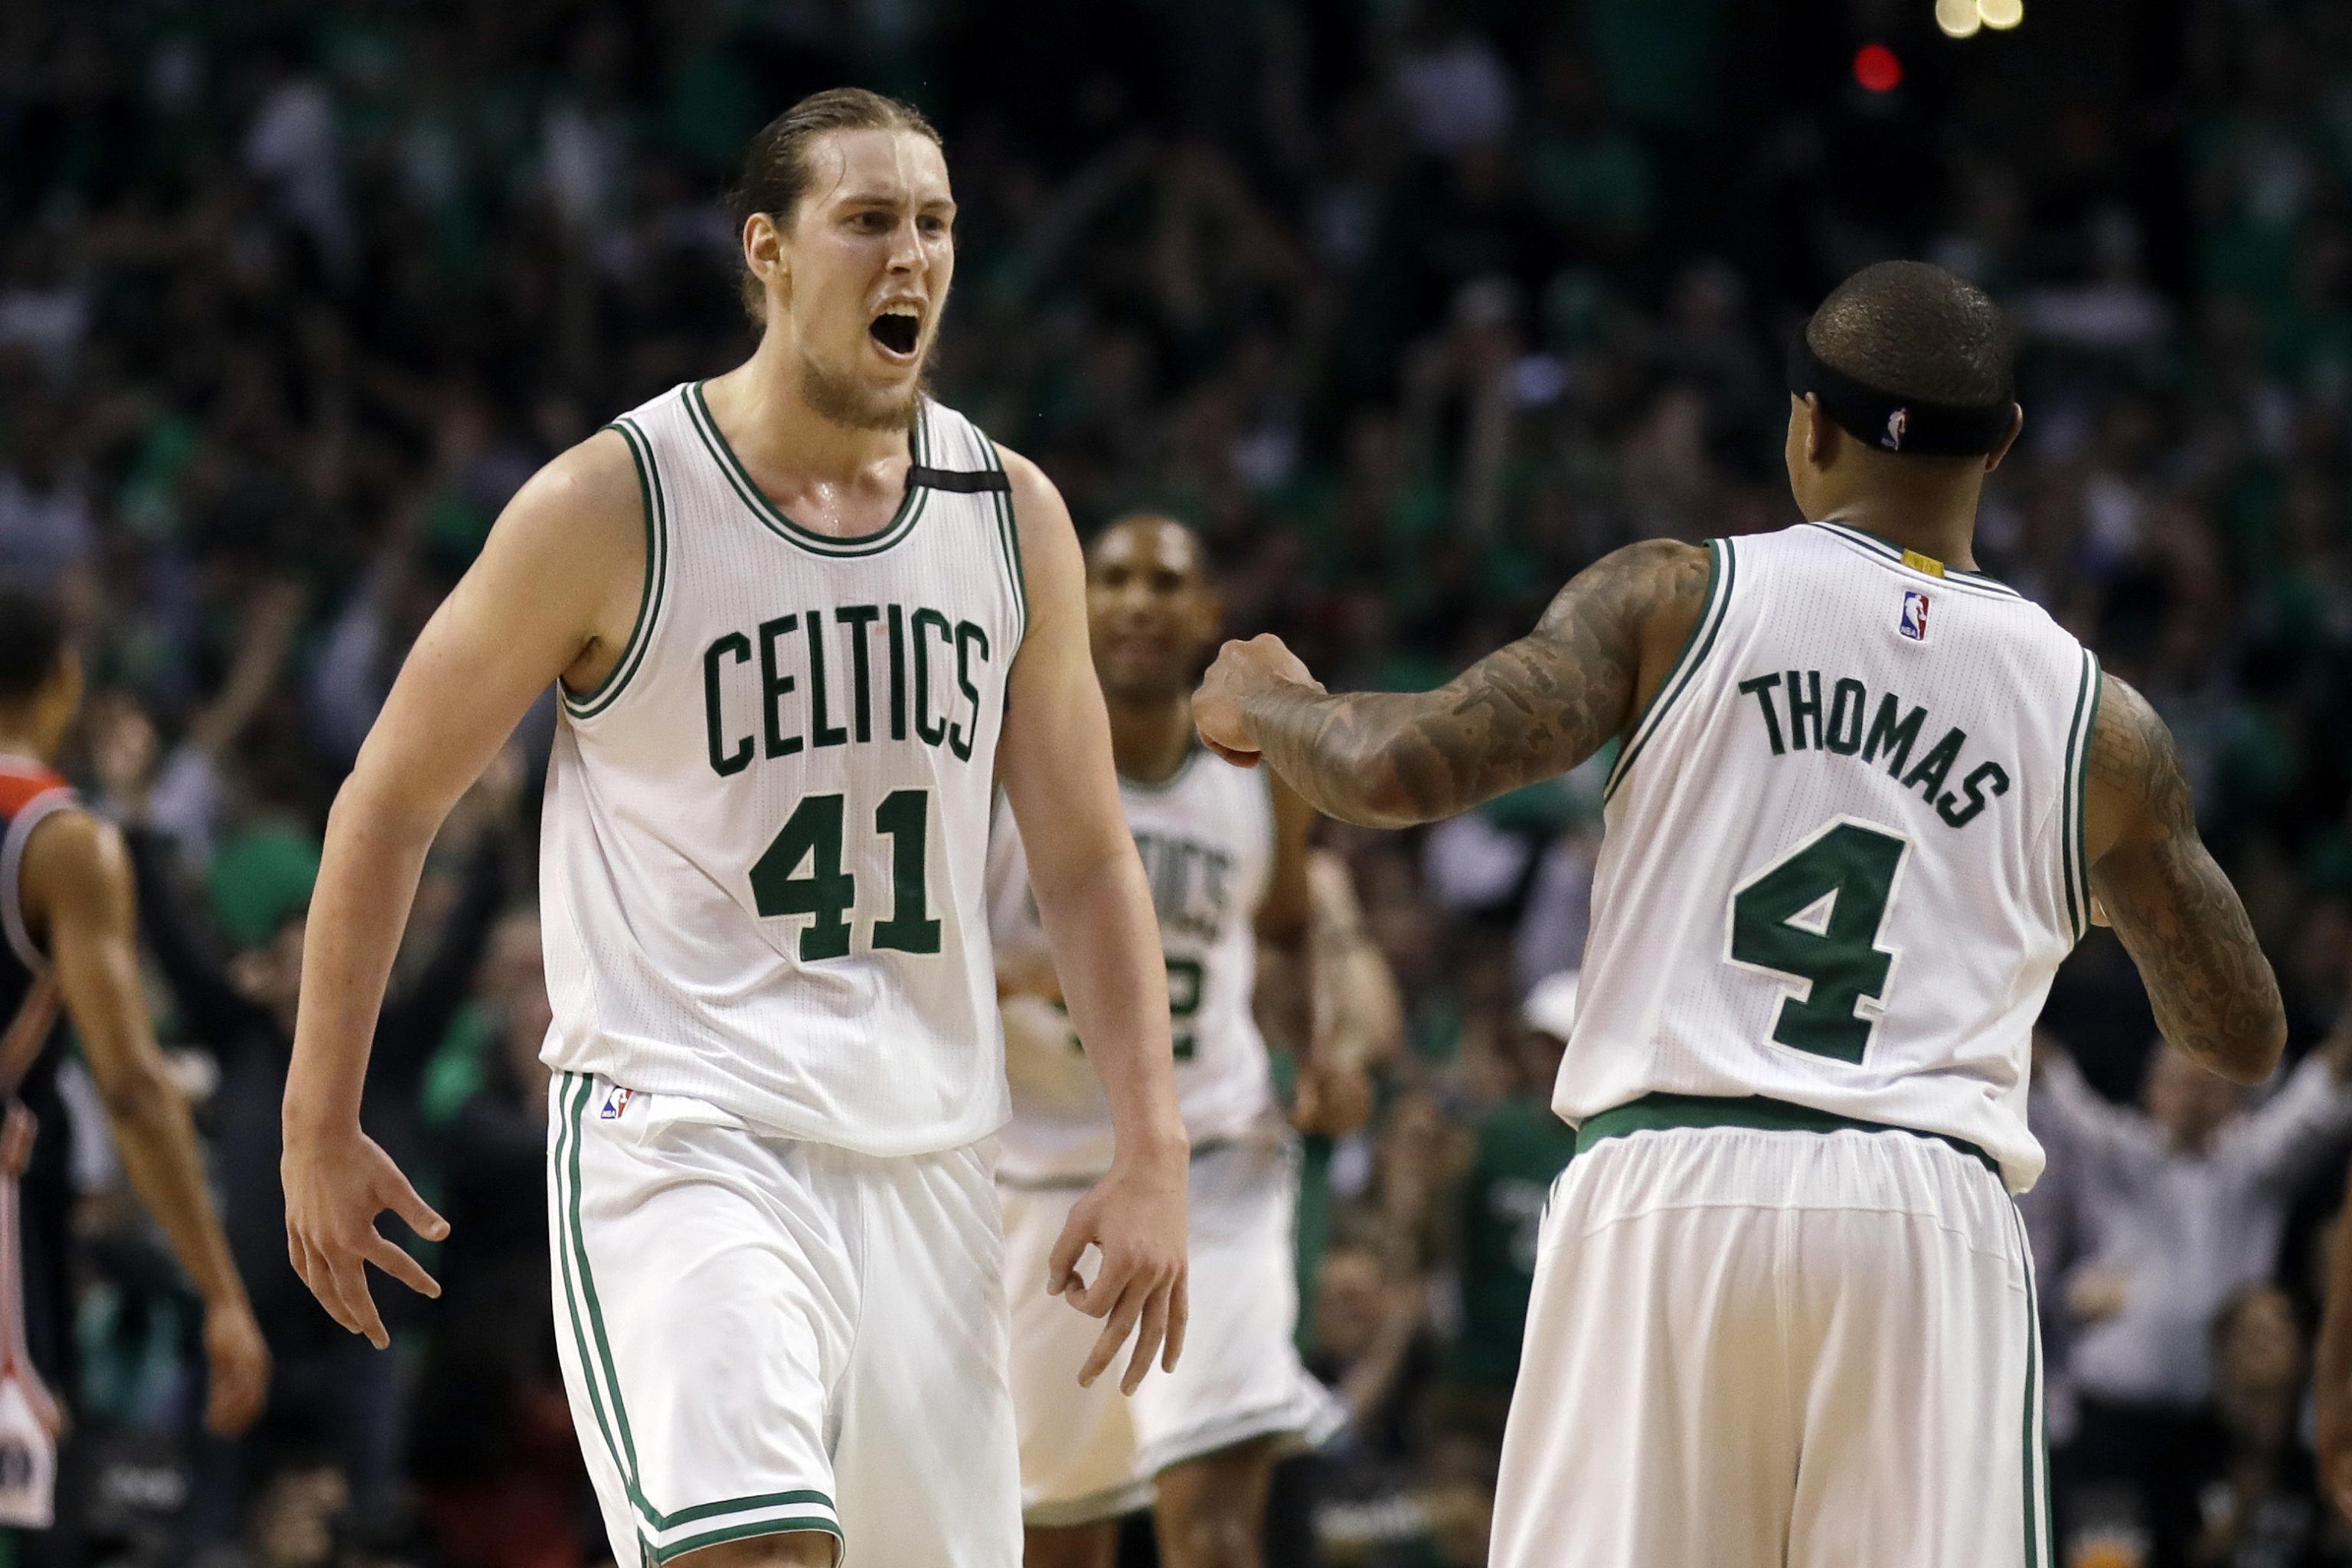 Celtics net Gonzaga's Kelly Olynyk in draft - The Boston Globe